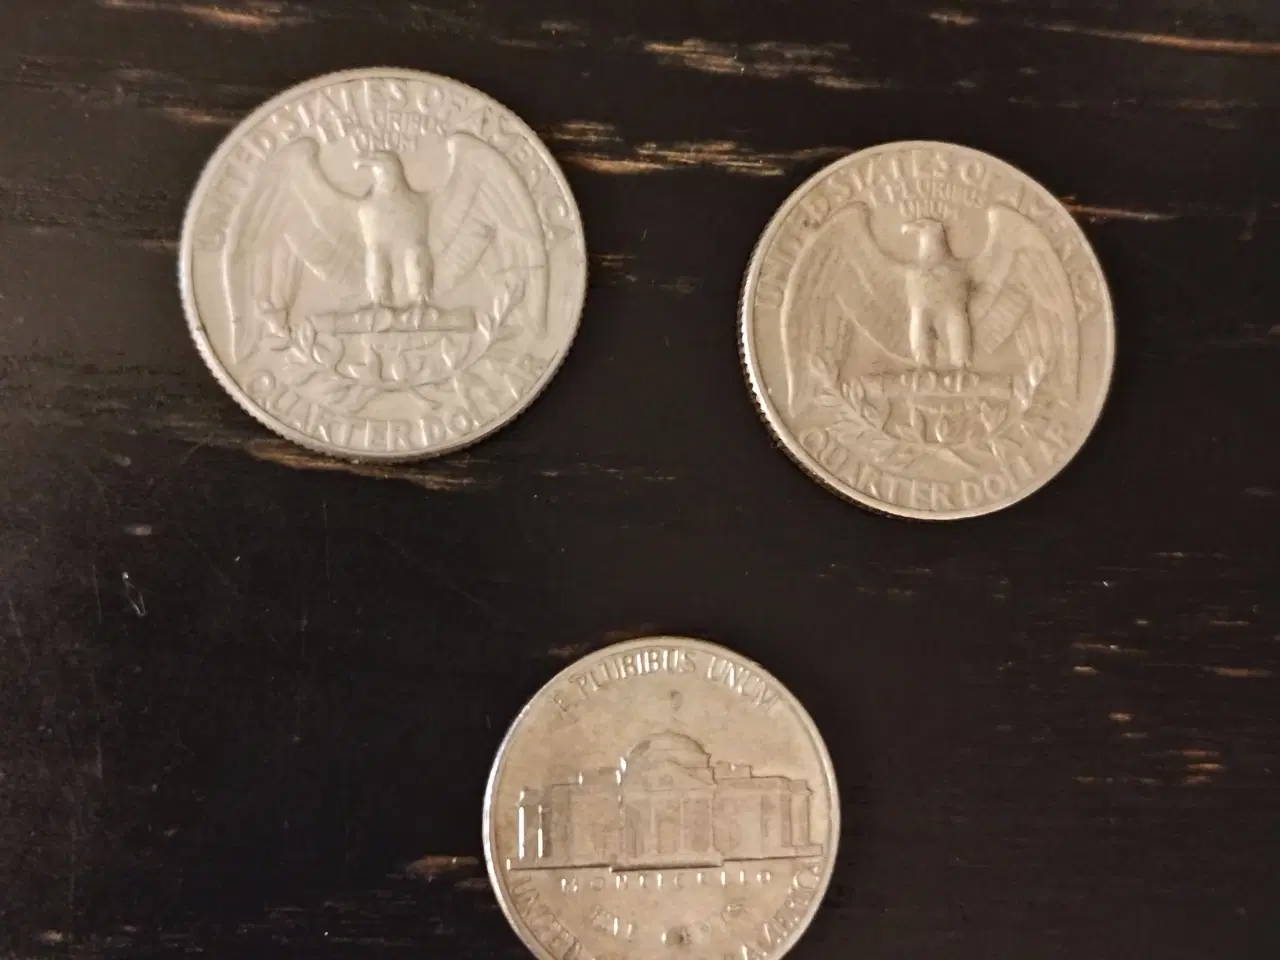 Billede 2 - 3 forskellige mønter fra USA